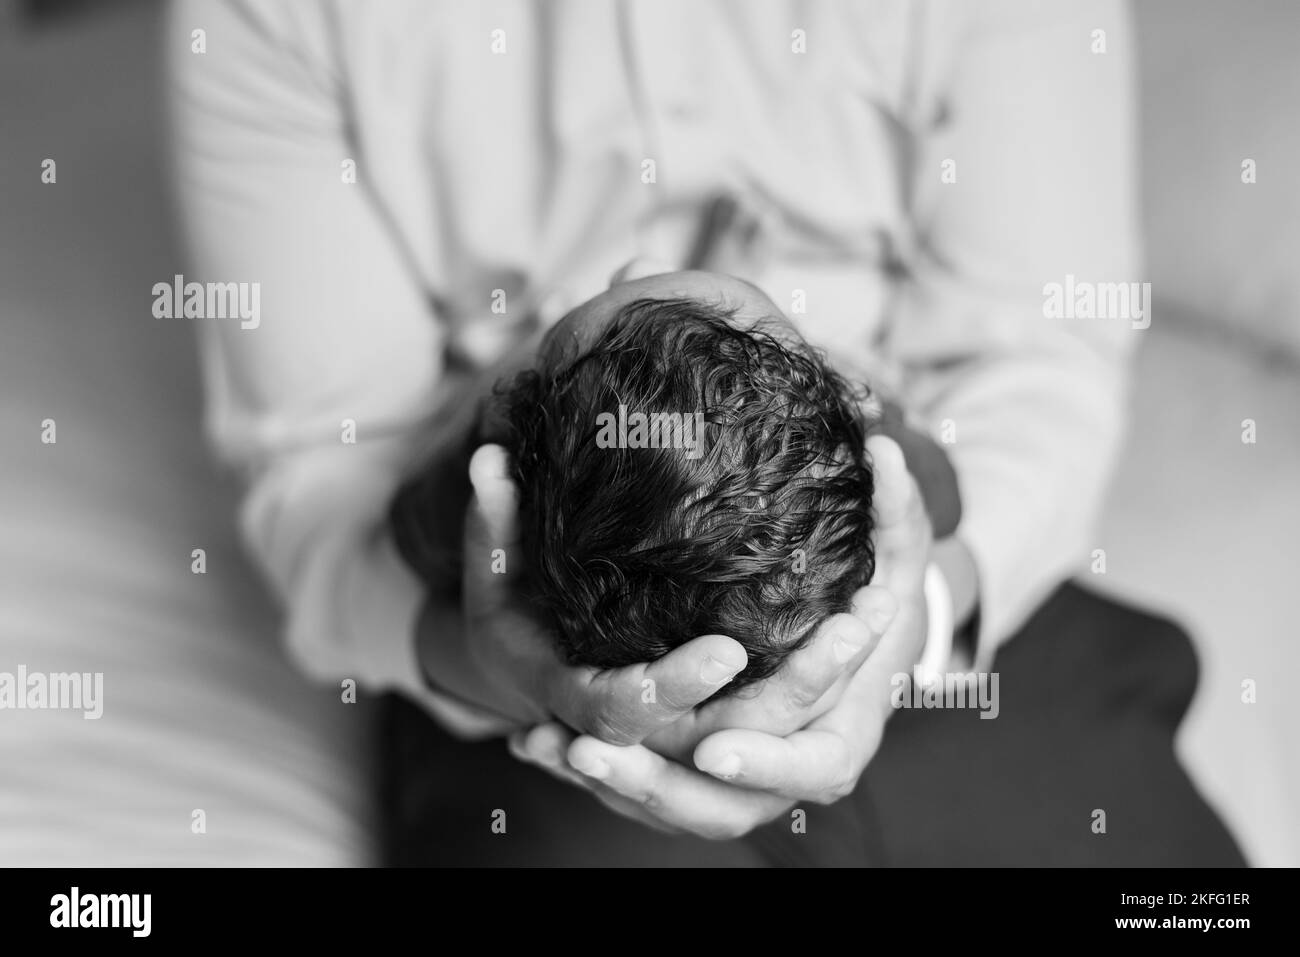 Ein Vater, der sein neugeborenes Baby in den Händen hält, mit einer Nahaufnahme von Kopf und Haar des Babys Stockfoto